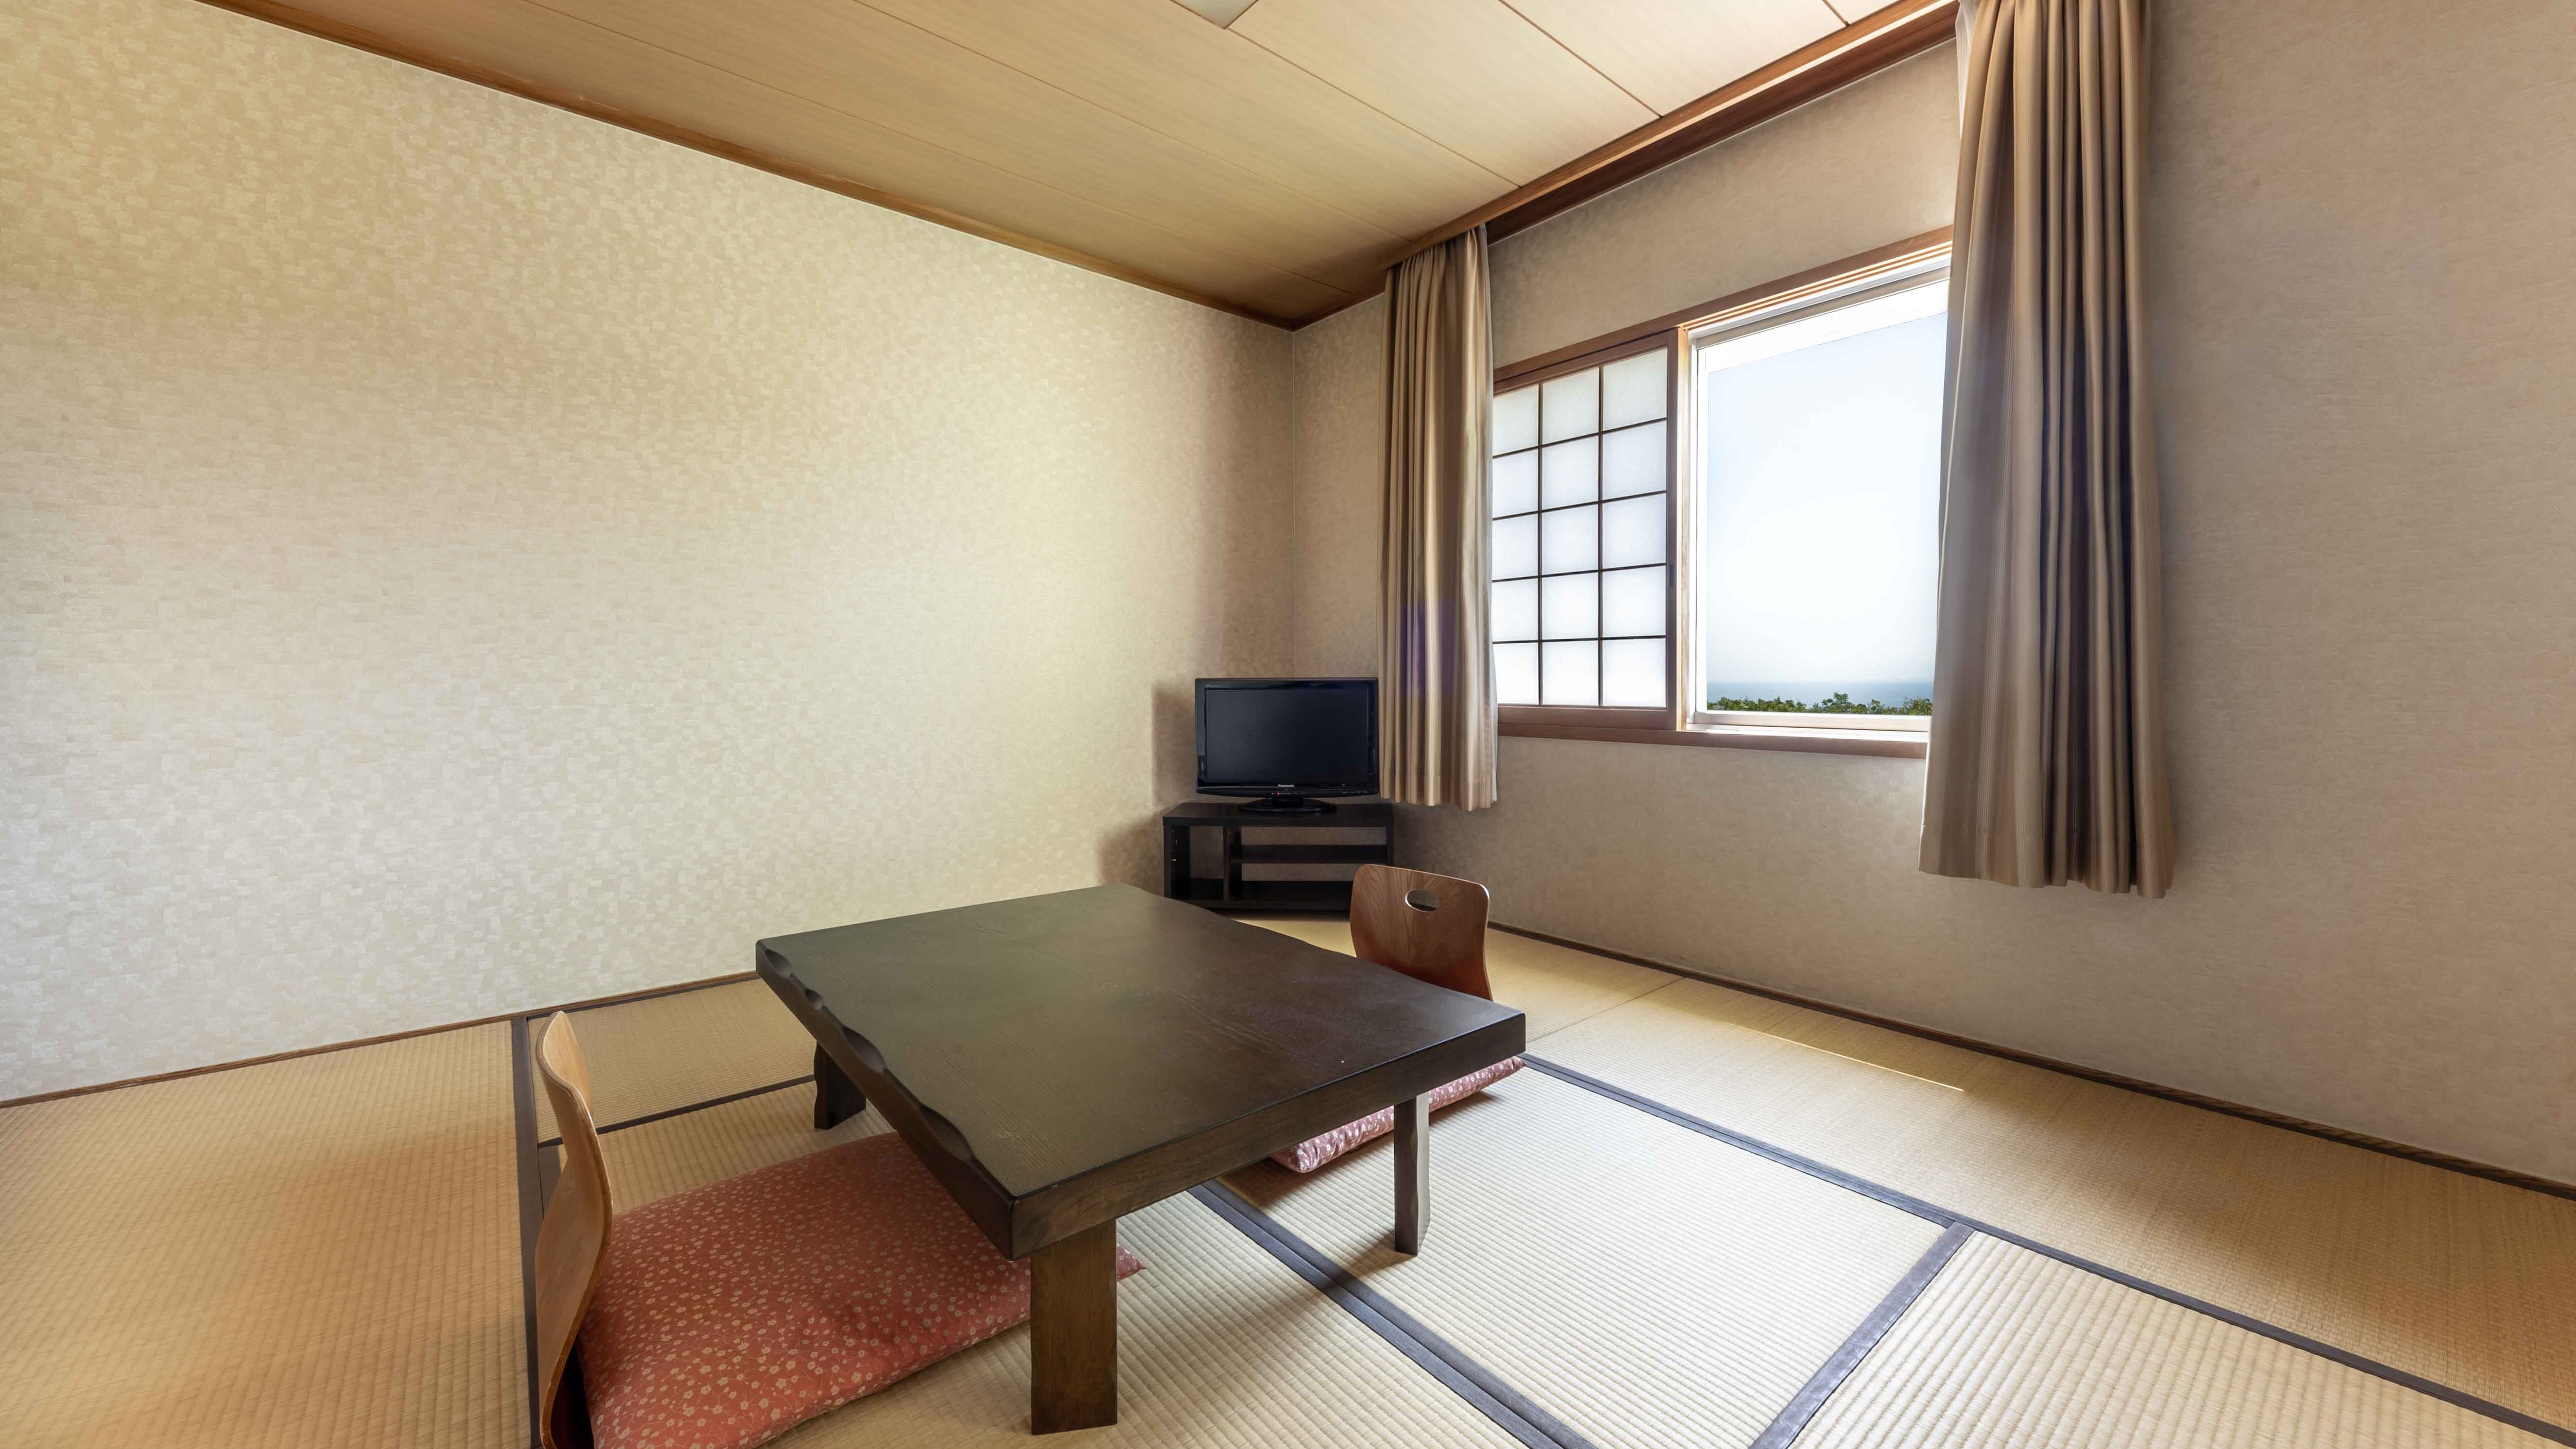 East building 1st floor Japanese-style room 8 tatami mats [sea floor]